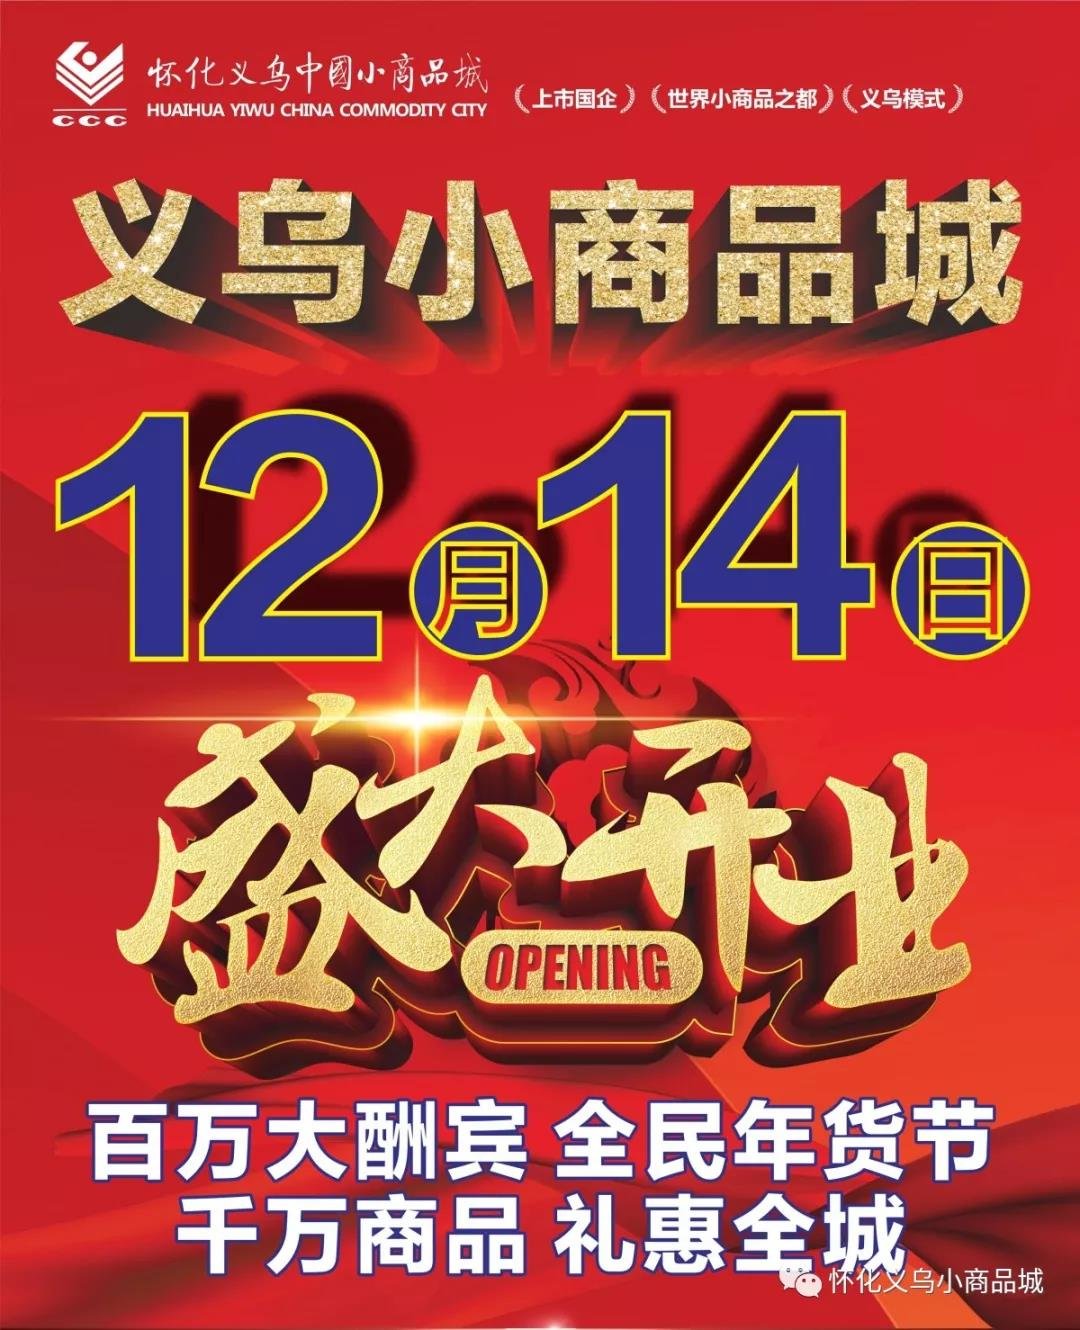 官宣：2019年12月14日怀化义乌小商品城即将盛大开业